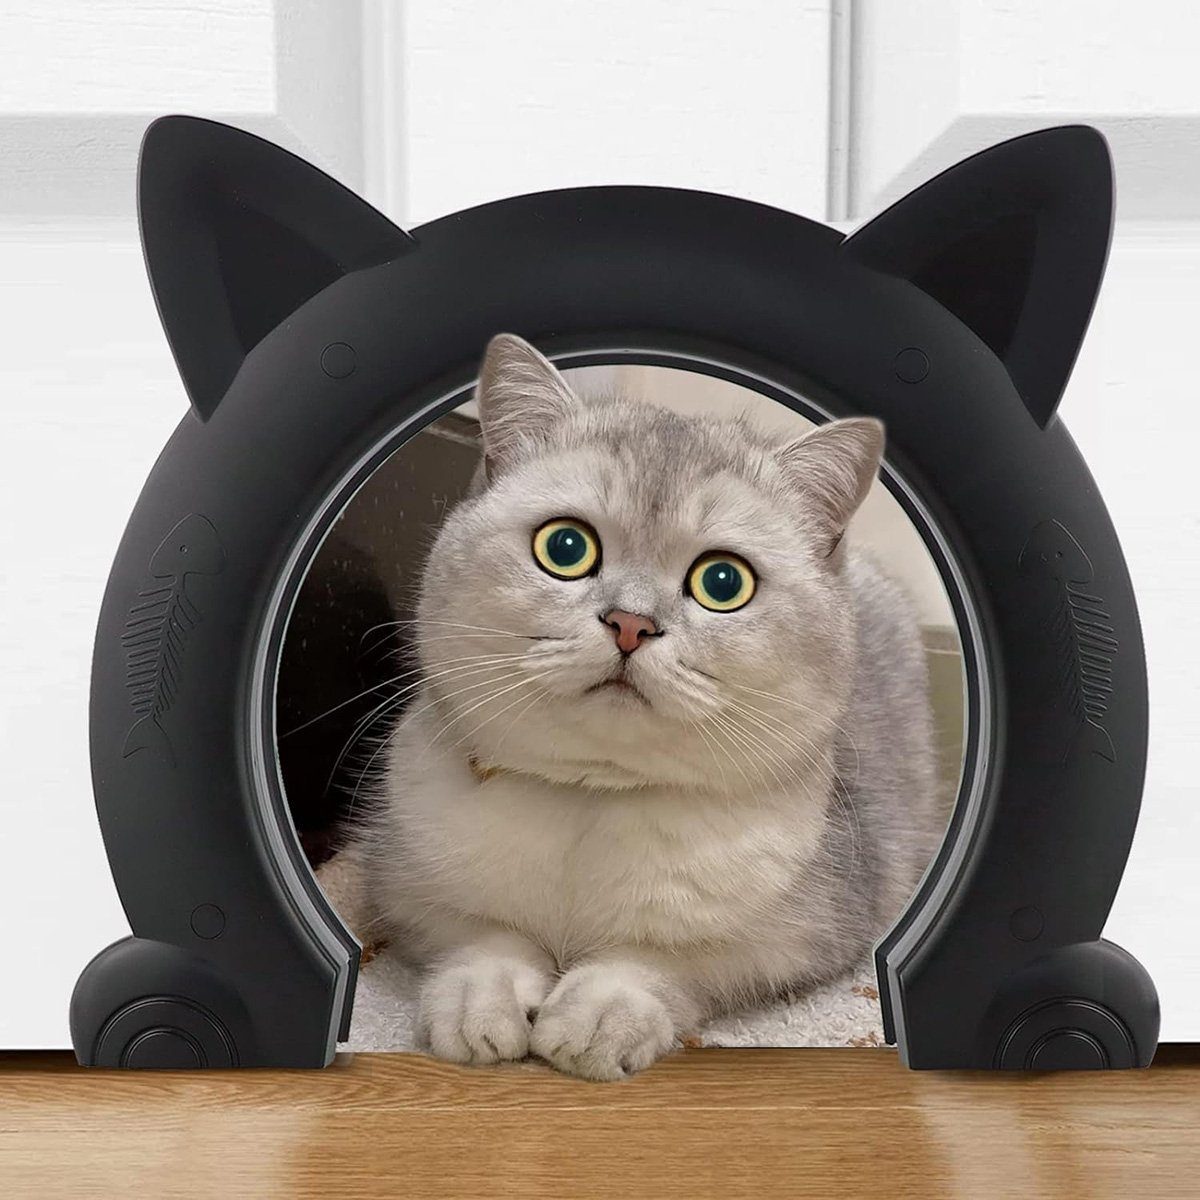 Cat Mate 4-Wege Katzentür mit Magnetverschluss 235 B braun